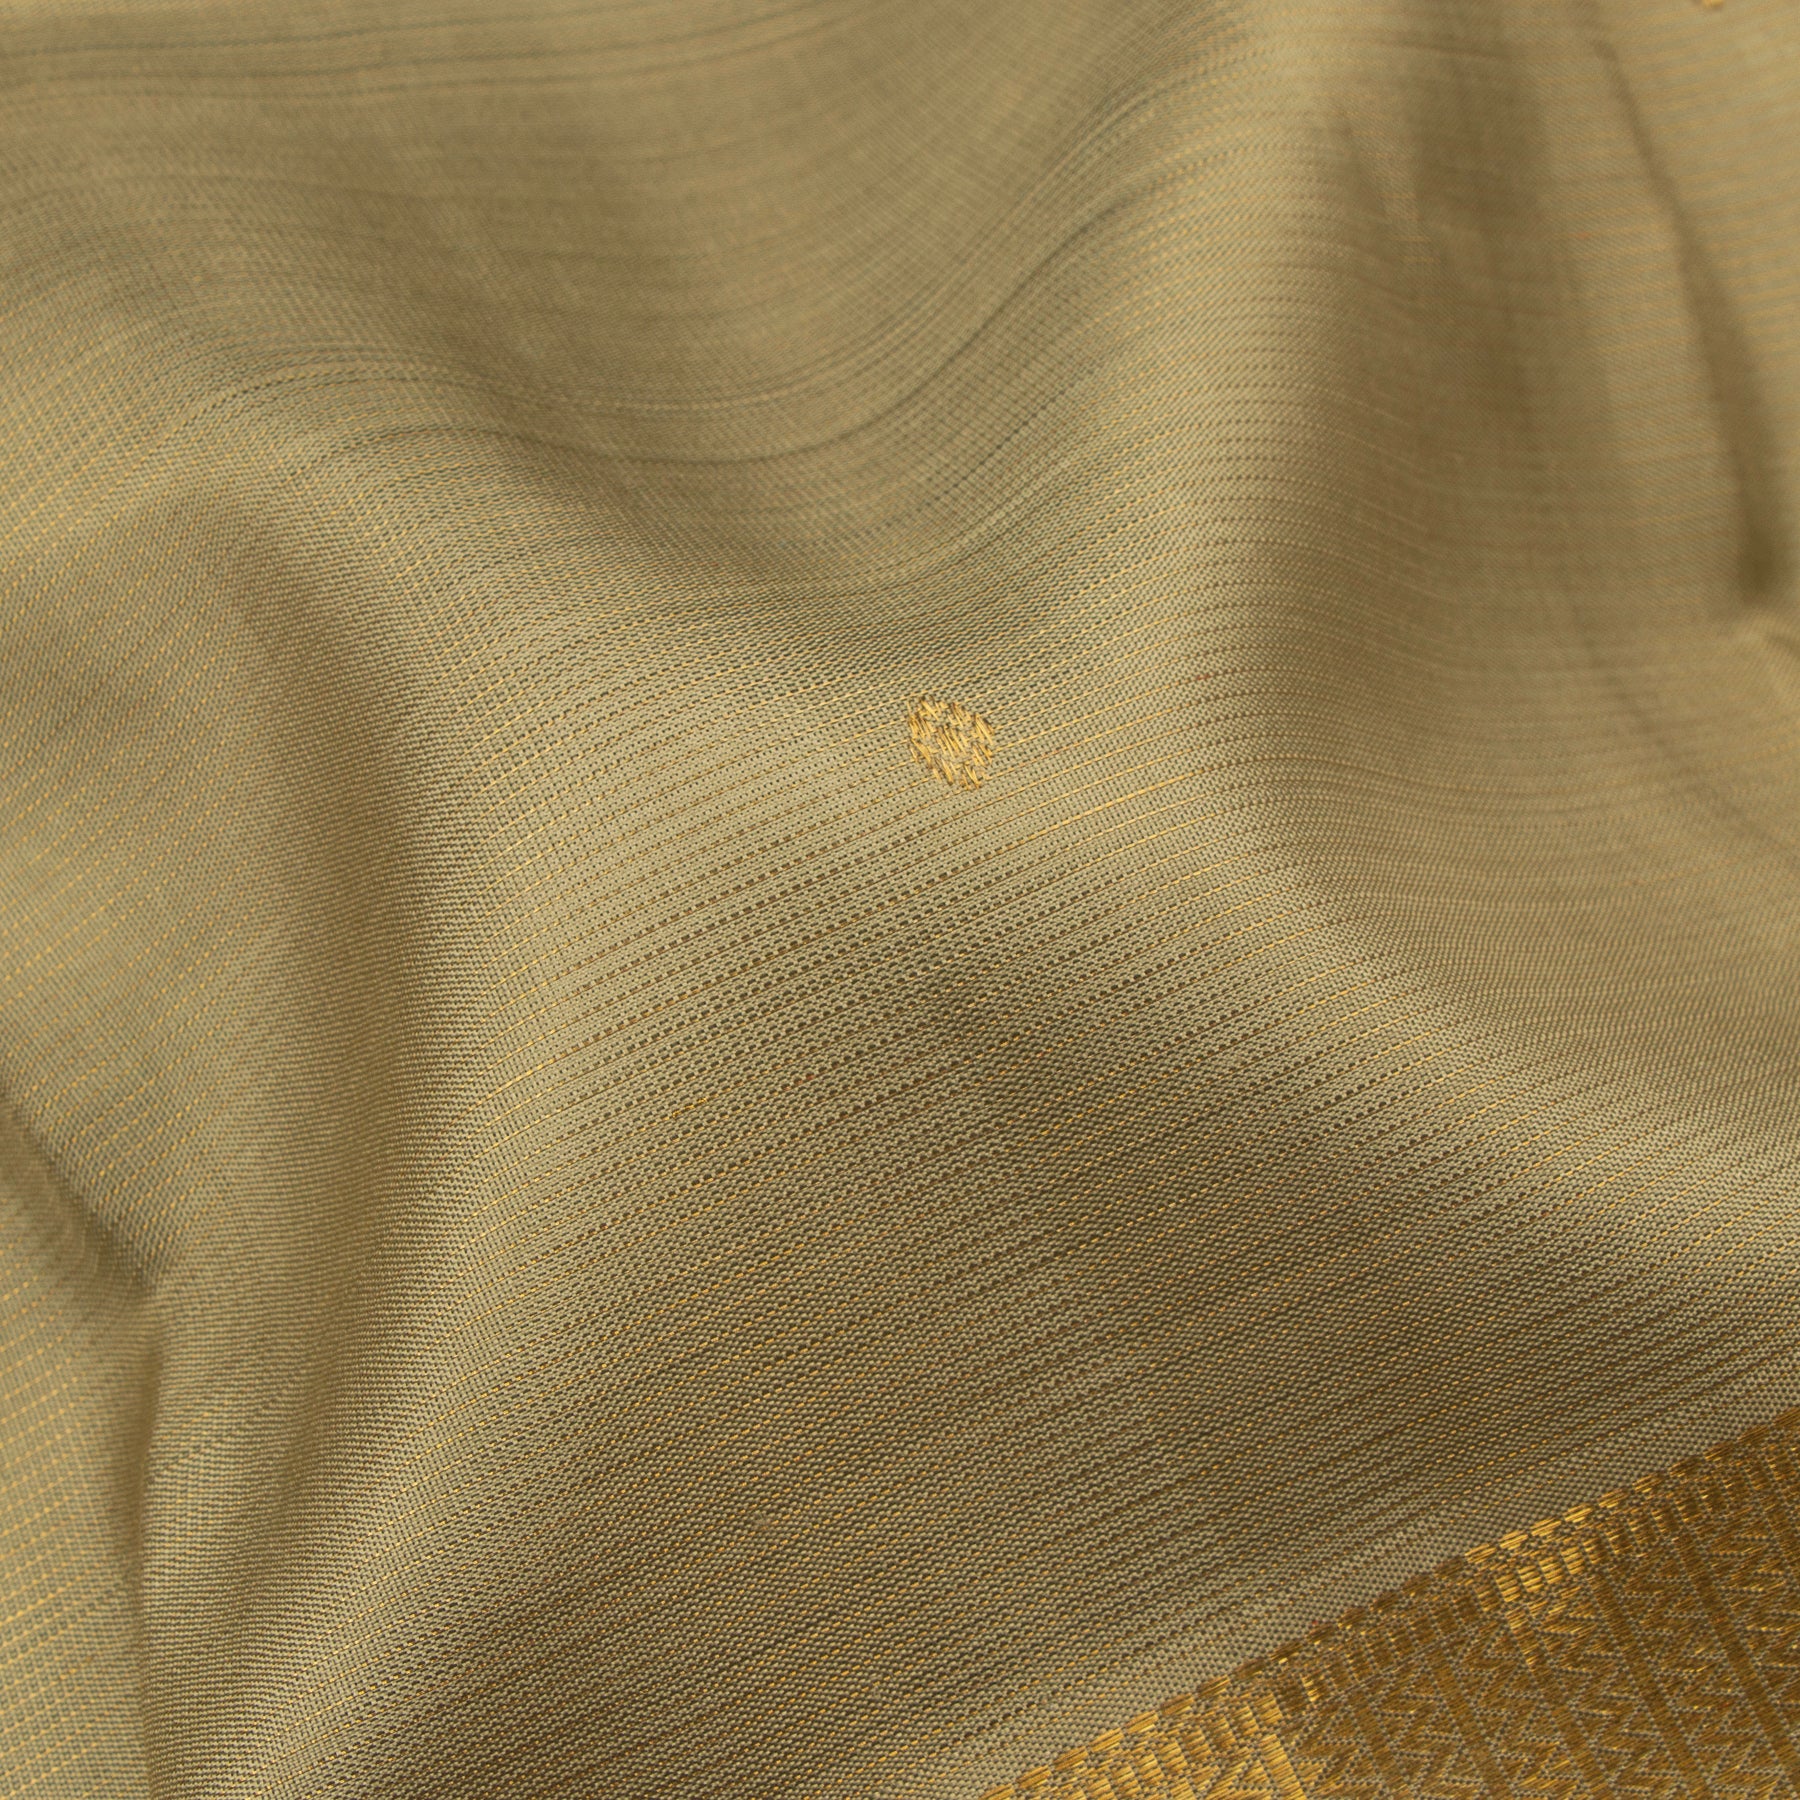 Kanakavalli Kanjivaram Silk Sari 22-599-HS001-10307 - Fabric View